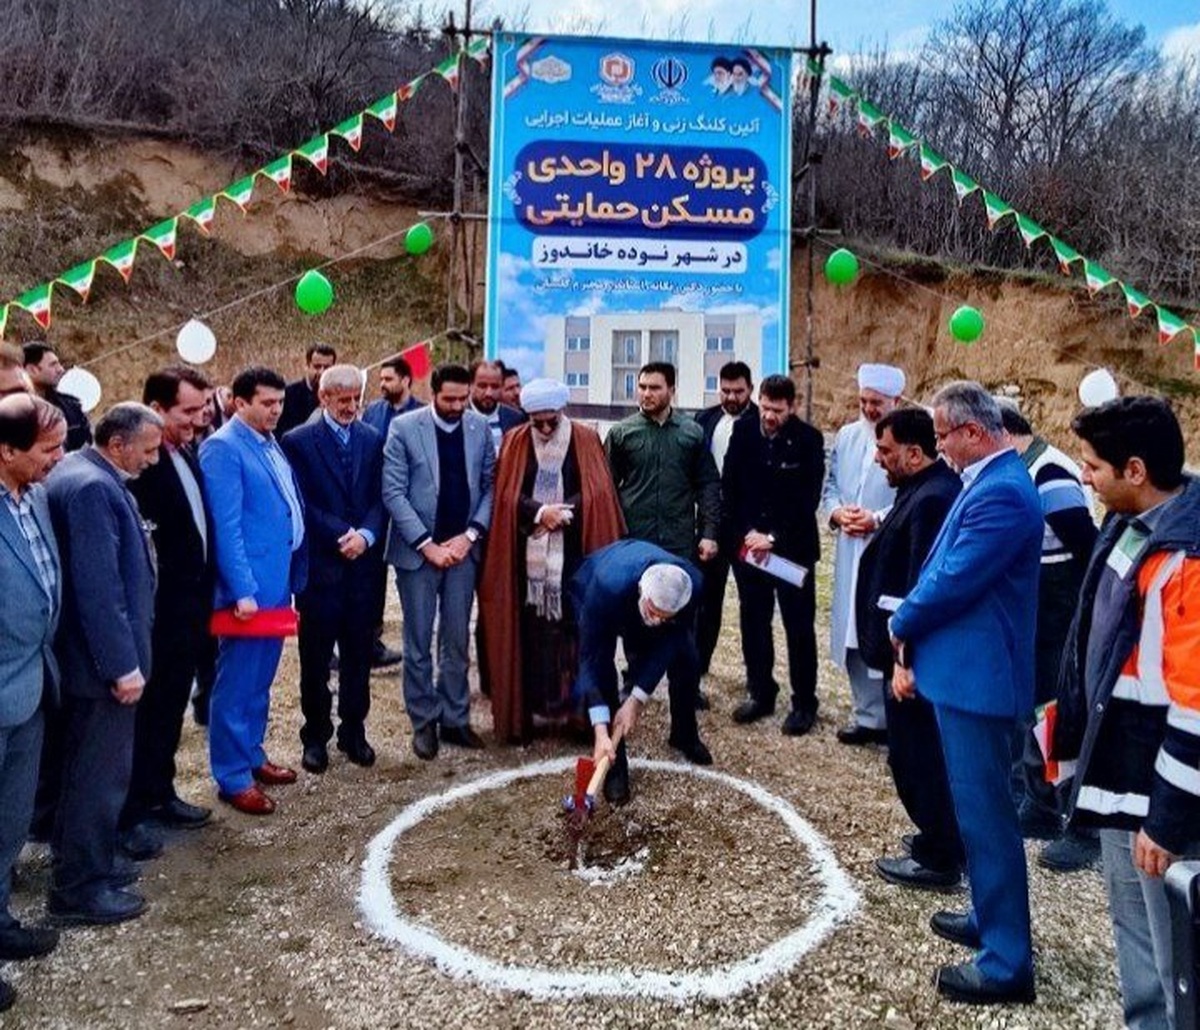  آغاز عملیات اجرایی پروژه ۲۸ واحدی مسکن حمایتی در شهر نوده خاندوز 